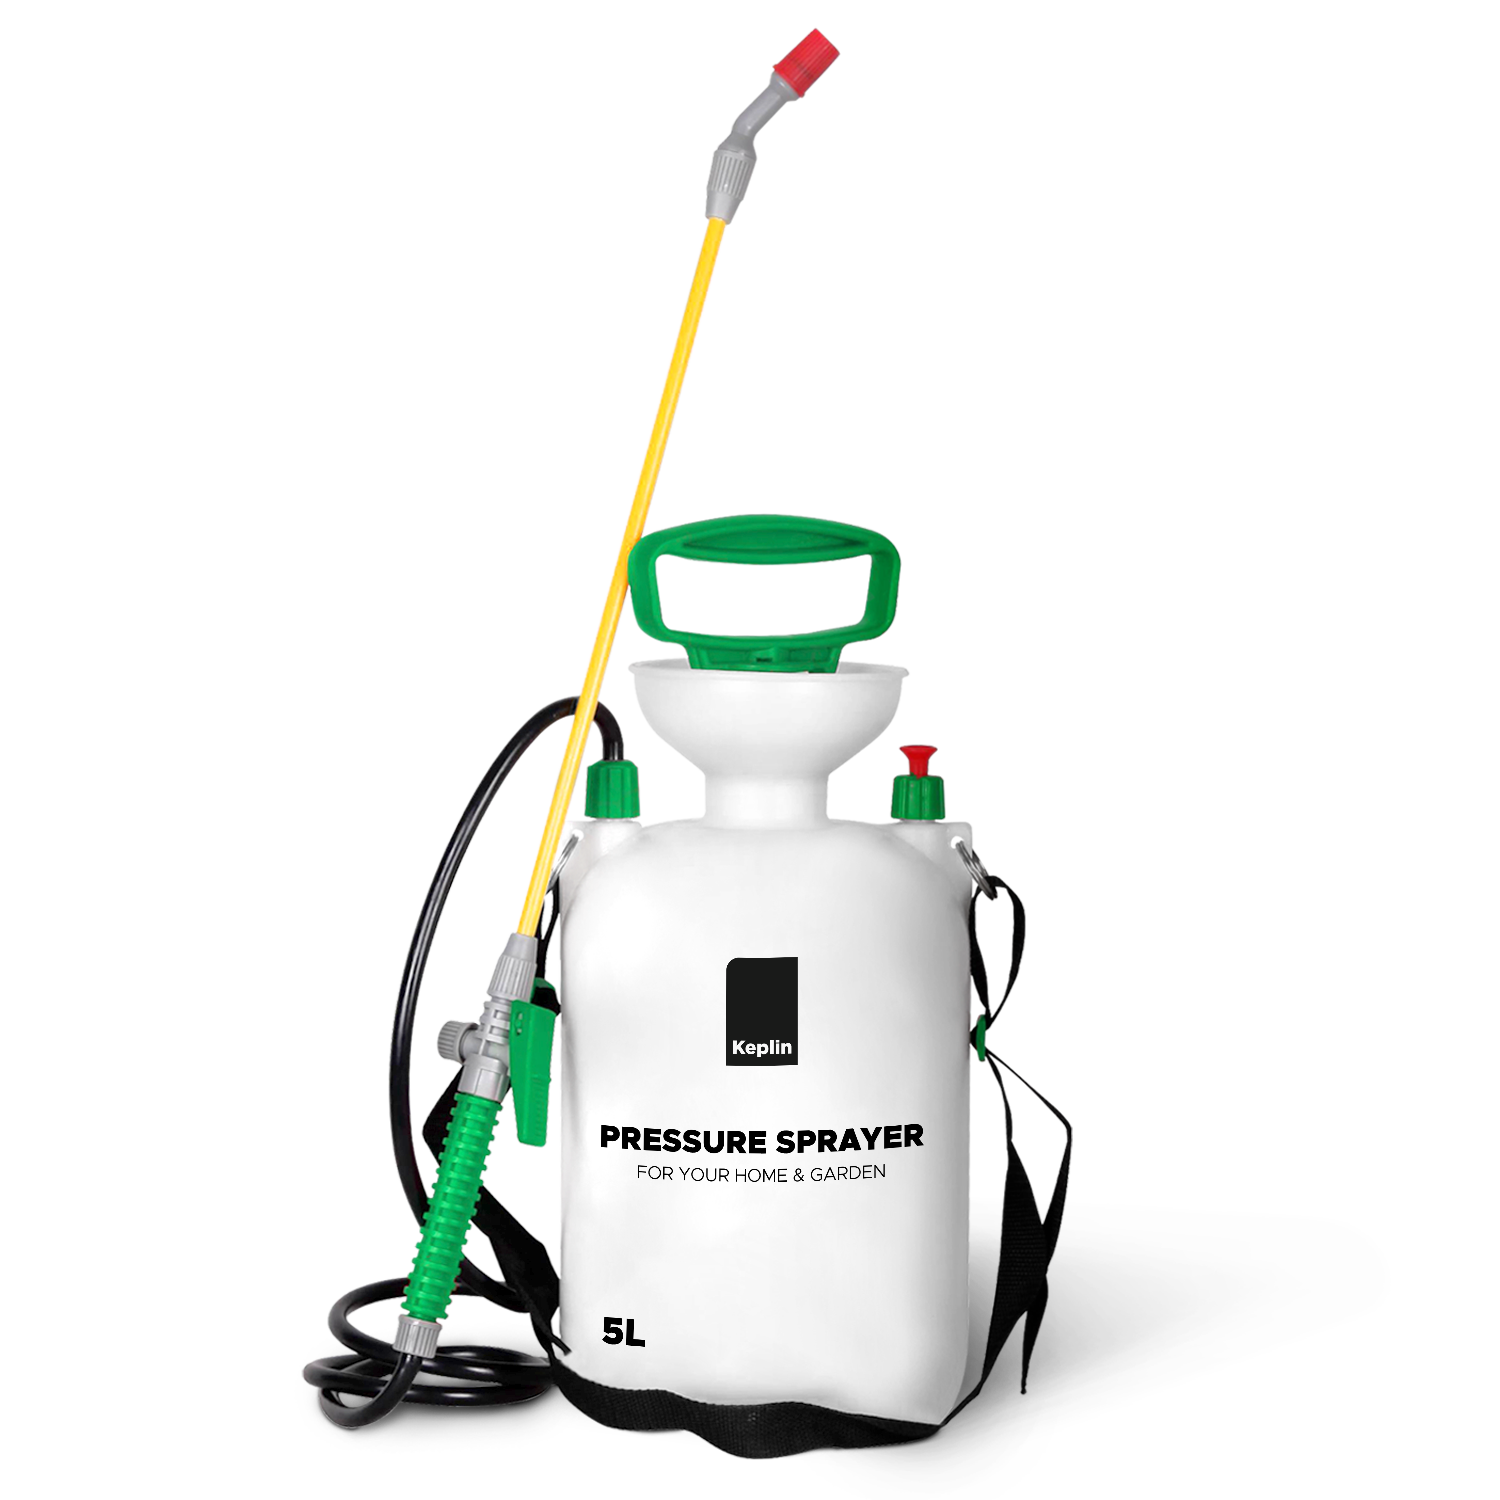 Pressure Sprayer for Gardening - Pump Action Garden Sprayer with Plastic Lance